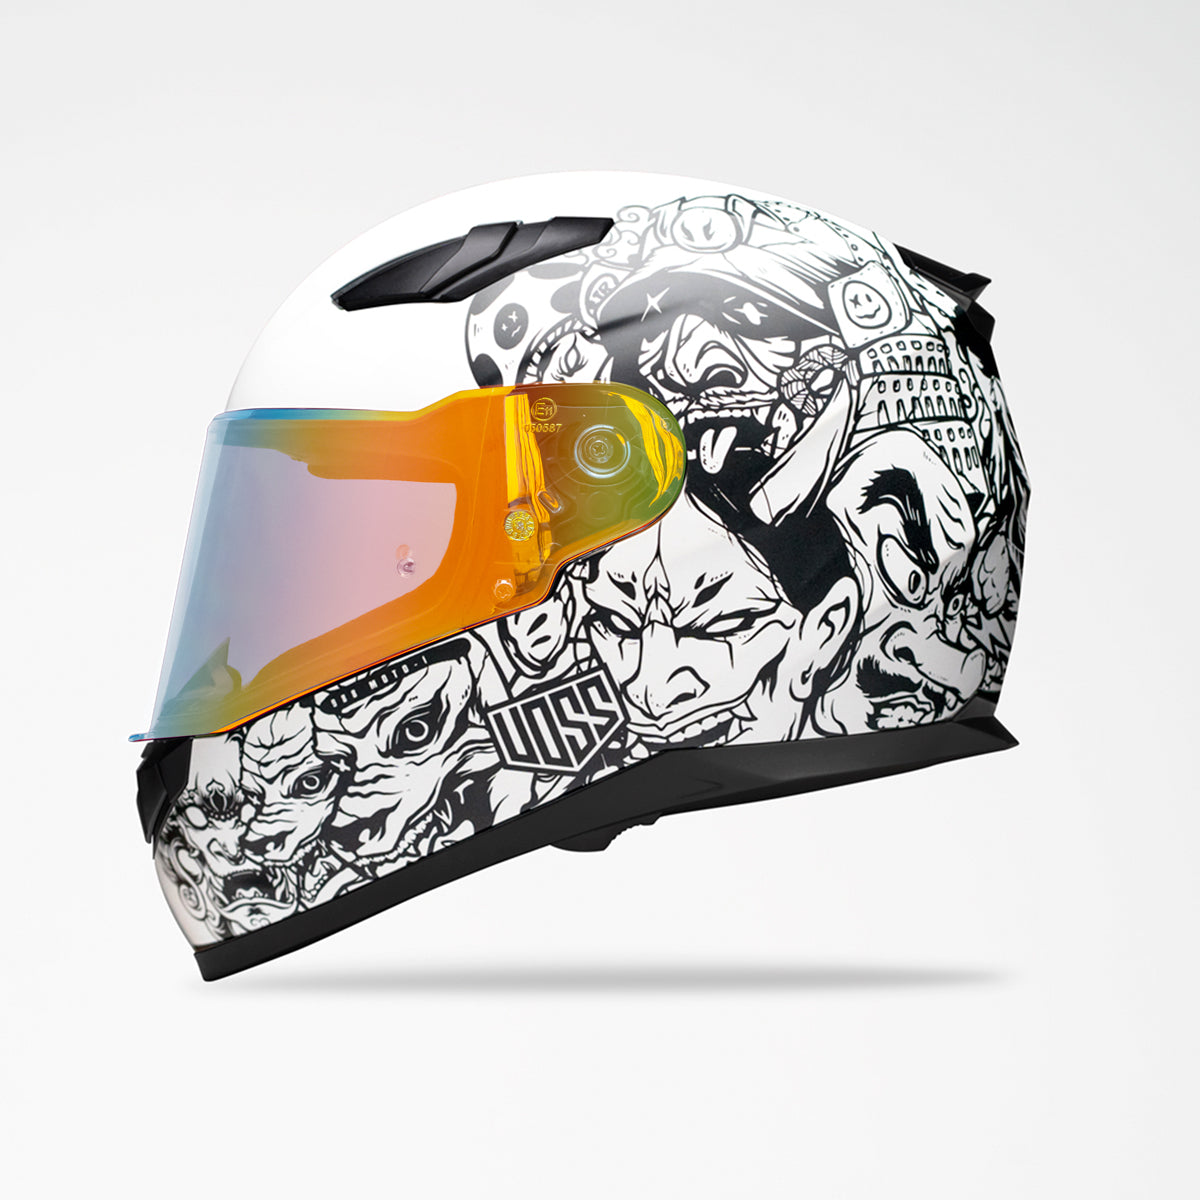 Voss 988 Moto-1 Populace Helmet